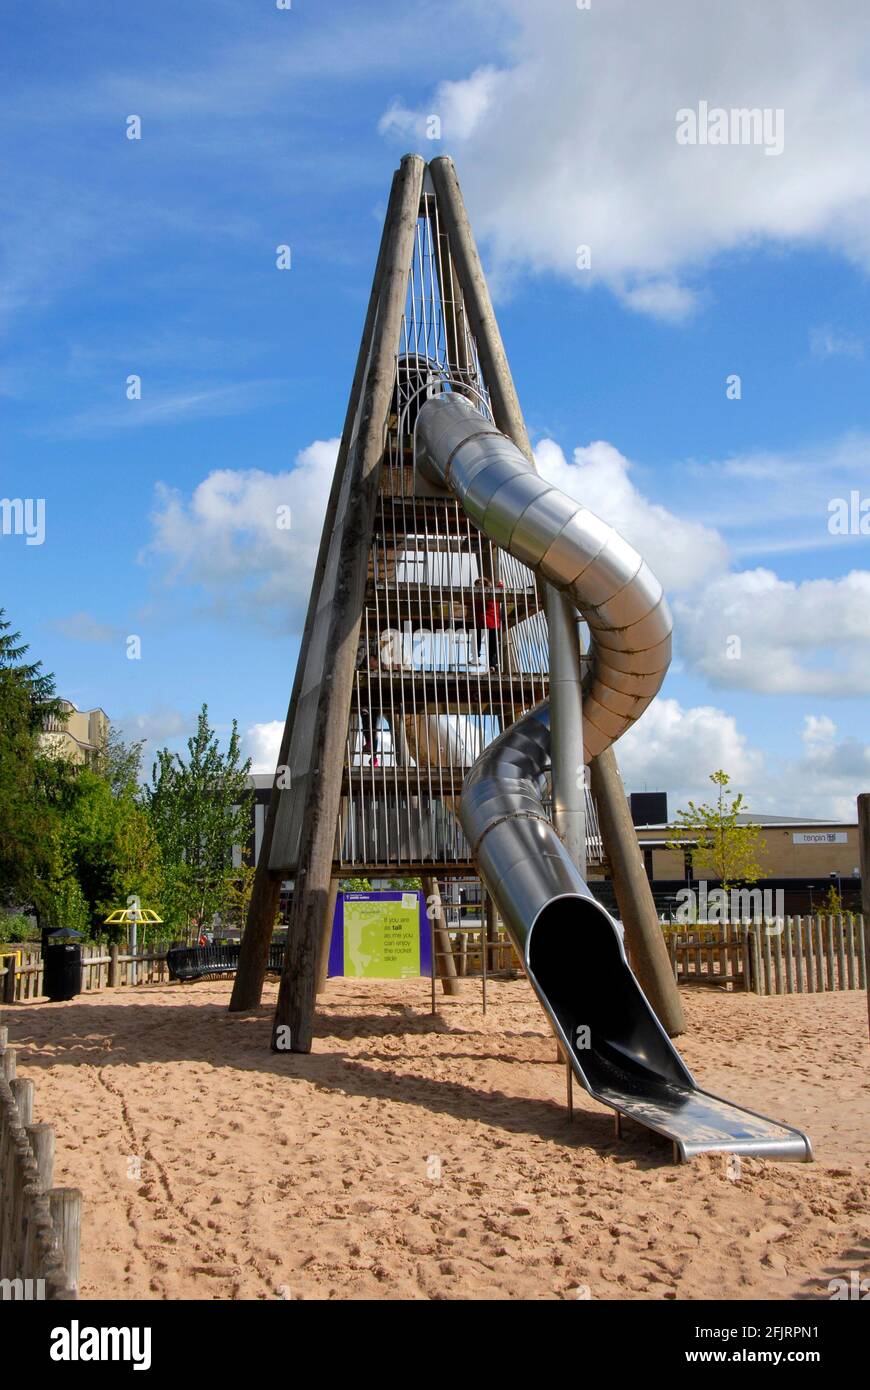 Hohe vierseitige Struktur mit gebogenem, geschlossenen Rohr, das als Kinderrutsche fungiert, Telford Town Park, Shropshire, England Stockfoto